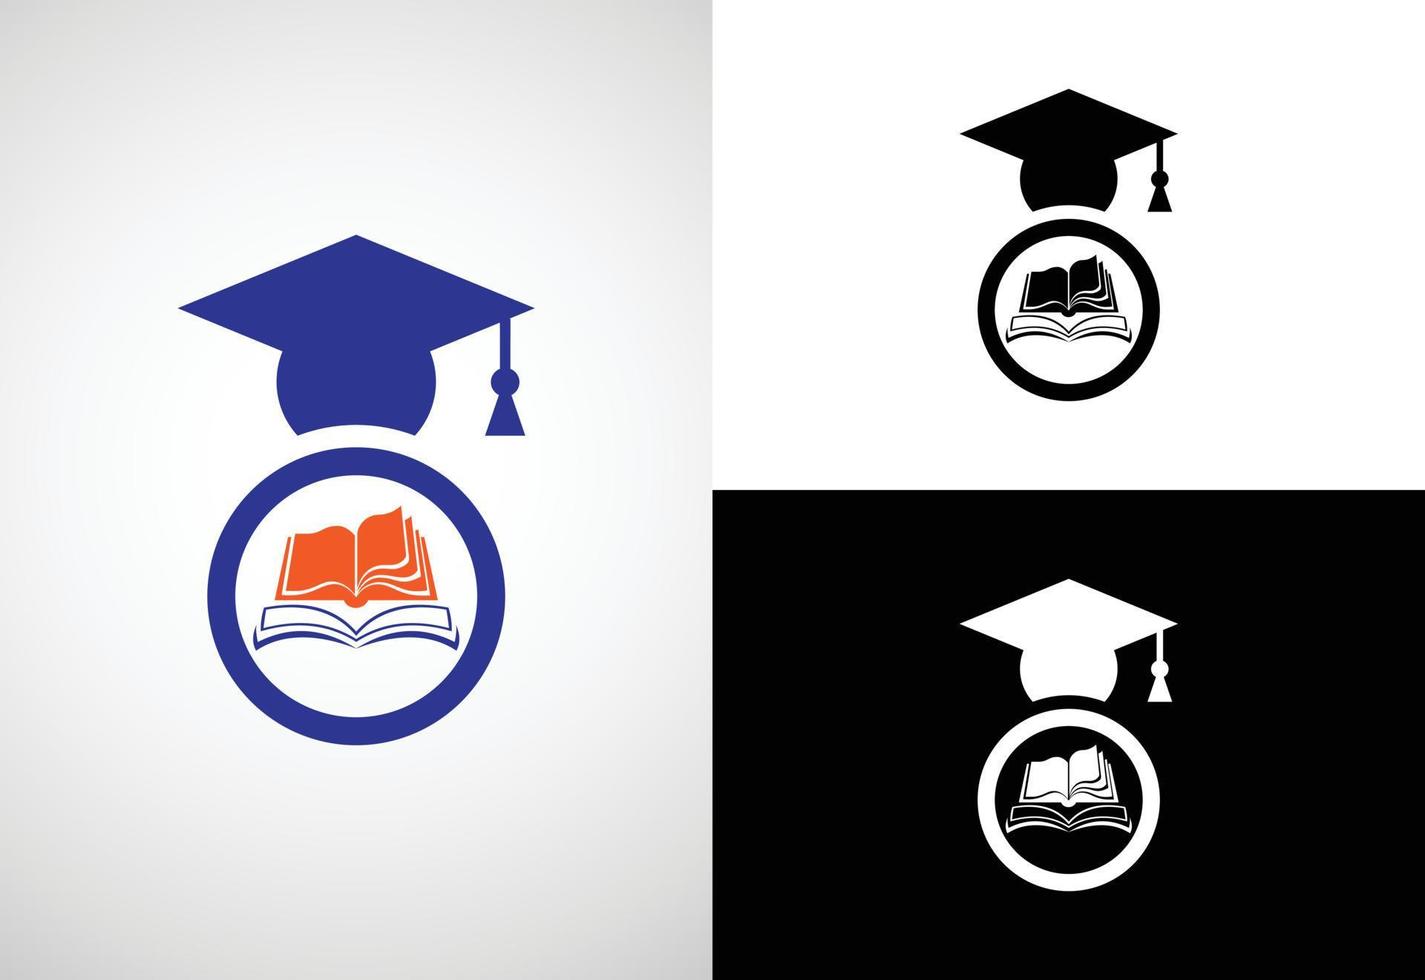 modèle vectoriel de conception de logo d'éducation, illustration vectorielle de logo d'éducation et de graduation